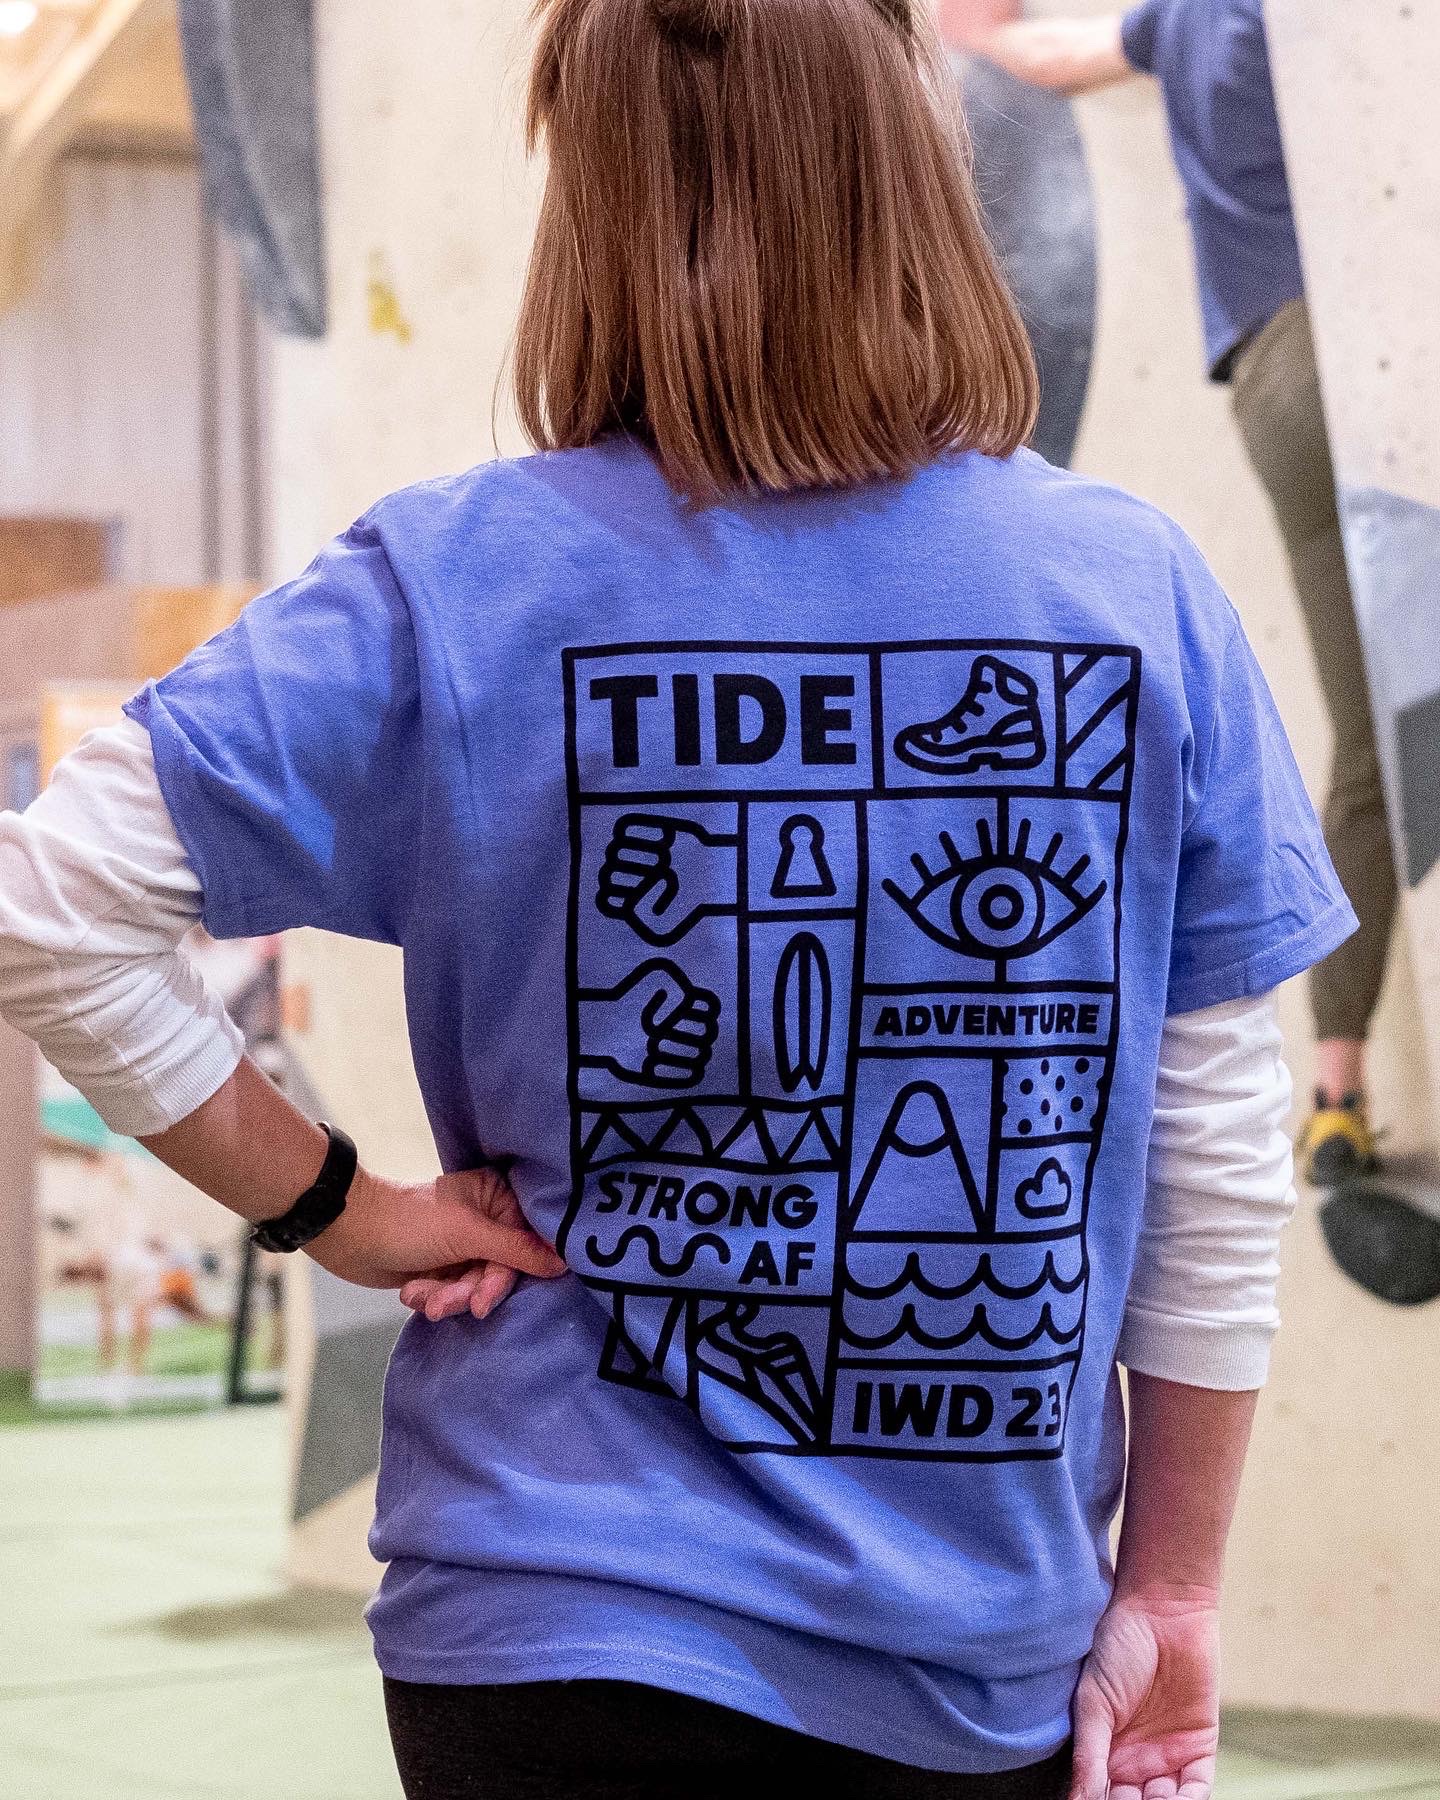 Tide IWD 23 T-Shirts